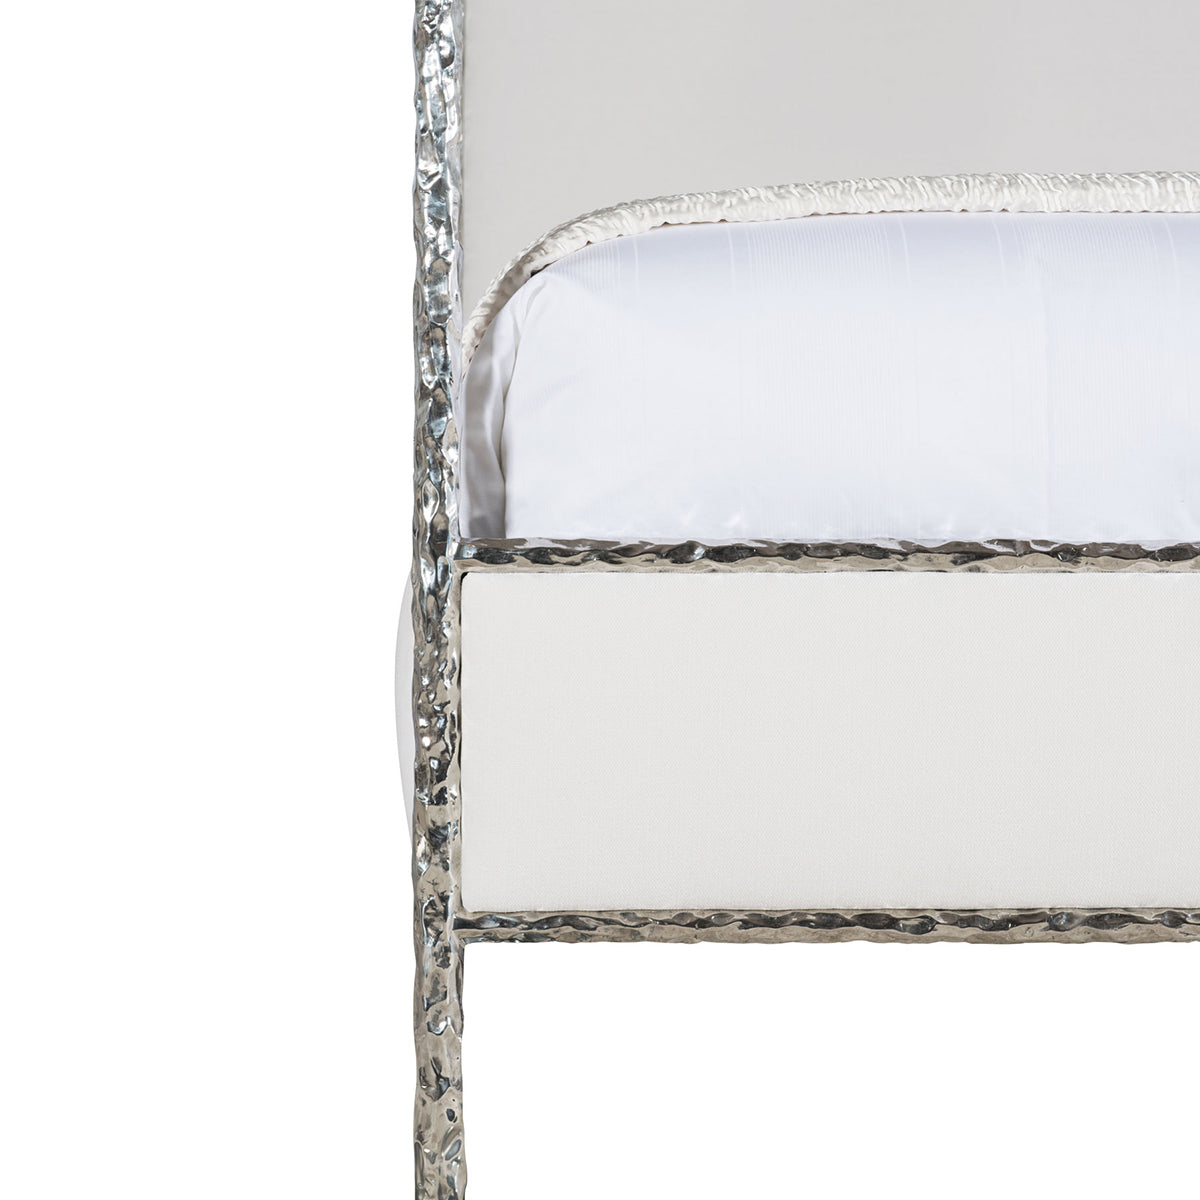 bernhardt odette upholstered canopy bed beds 